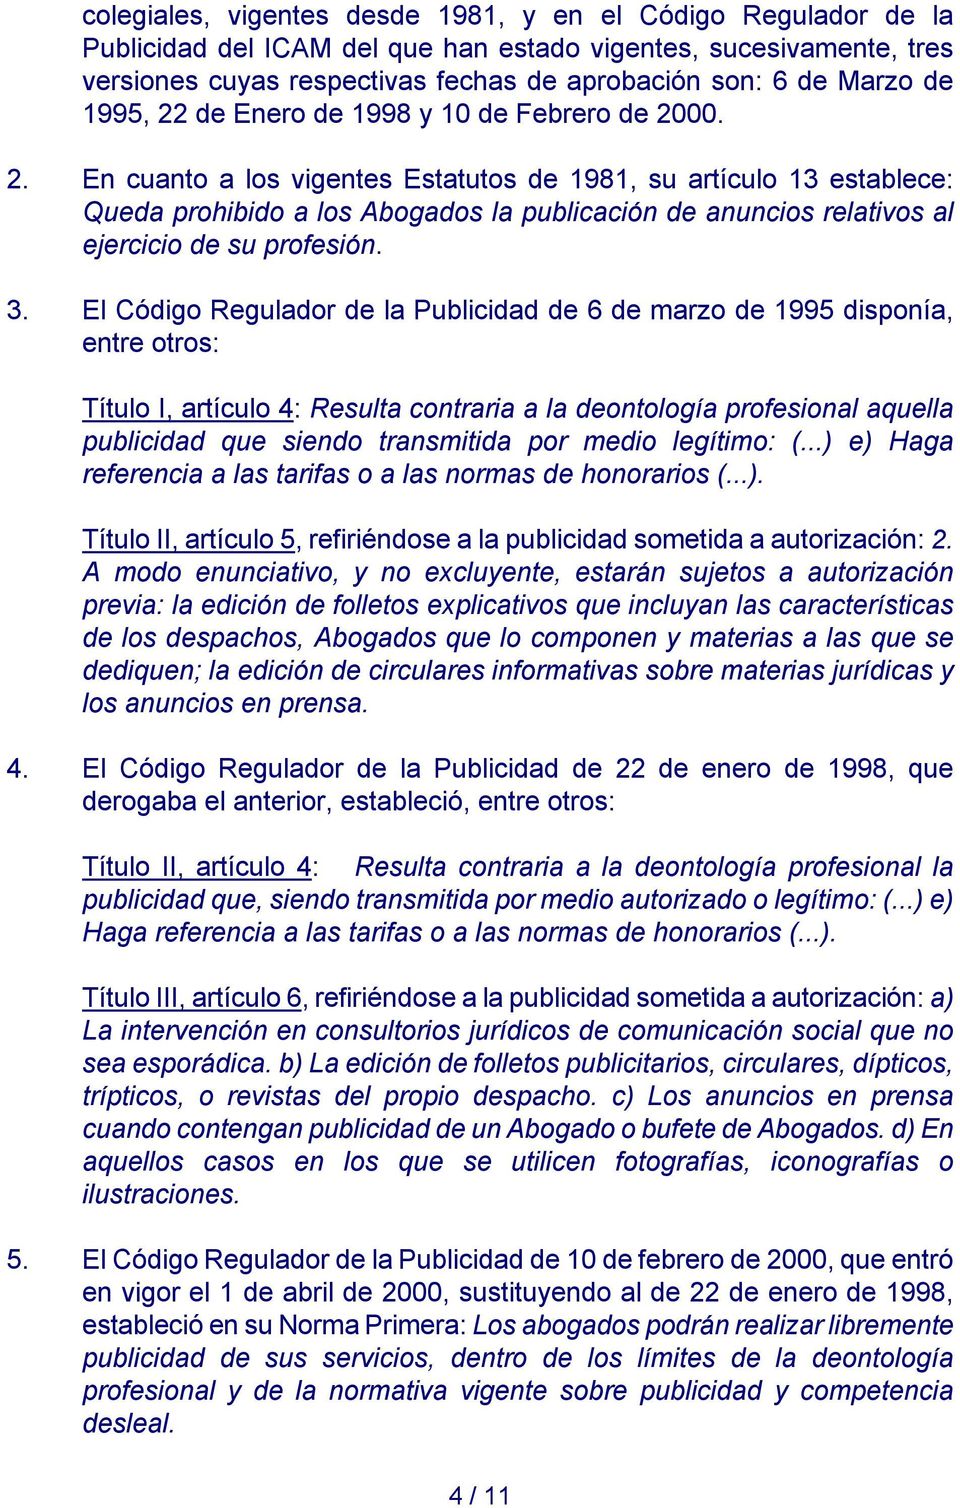 3. El Código Regulador de la Publicidad de 6 de marzo de 1995 disponía, entre otros: Título I, artículo 4: Resulta contraria a la deontología profesional aquella publicidad que siendo transmitida por